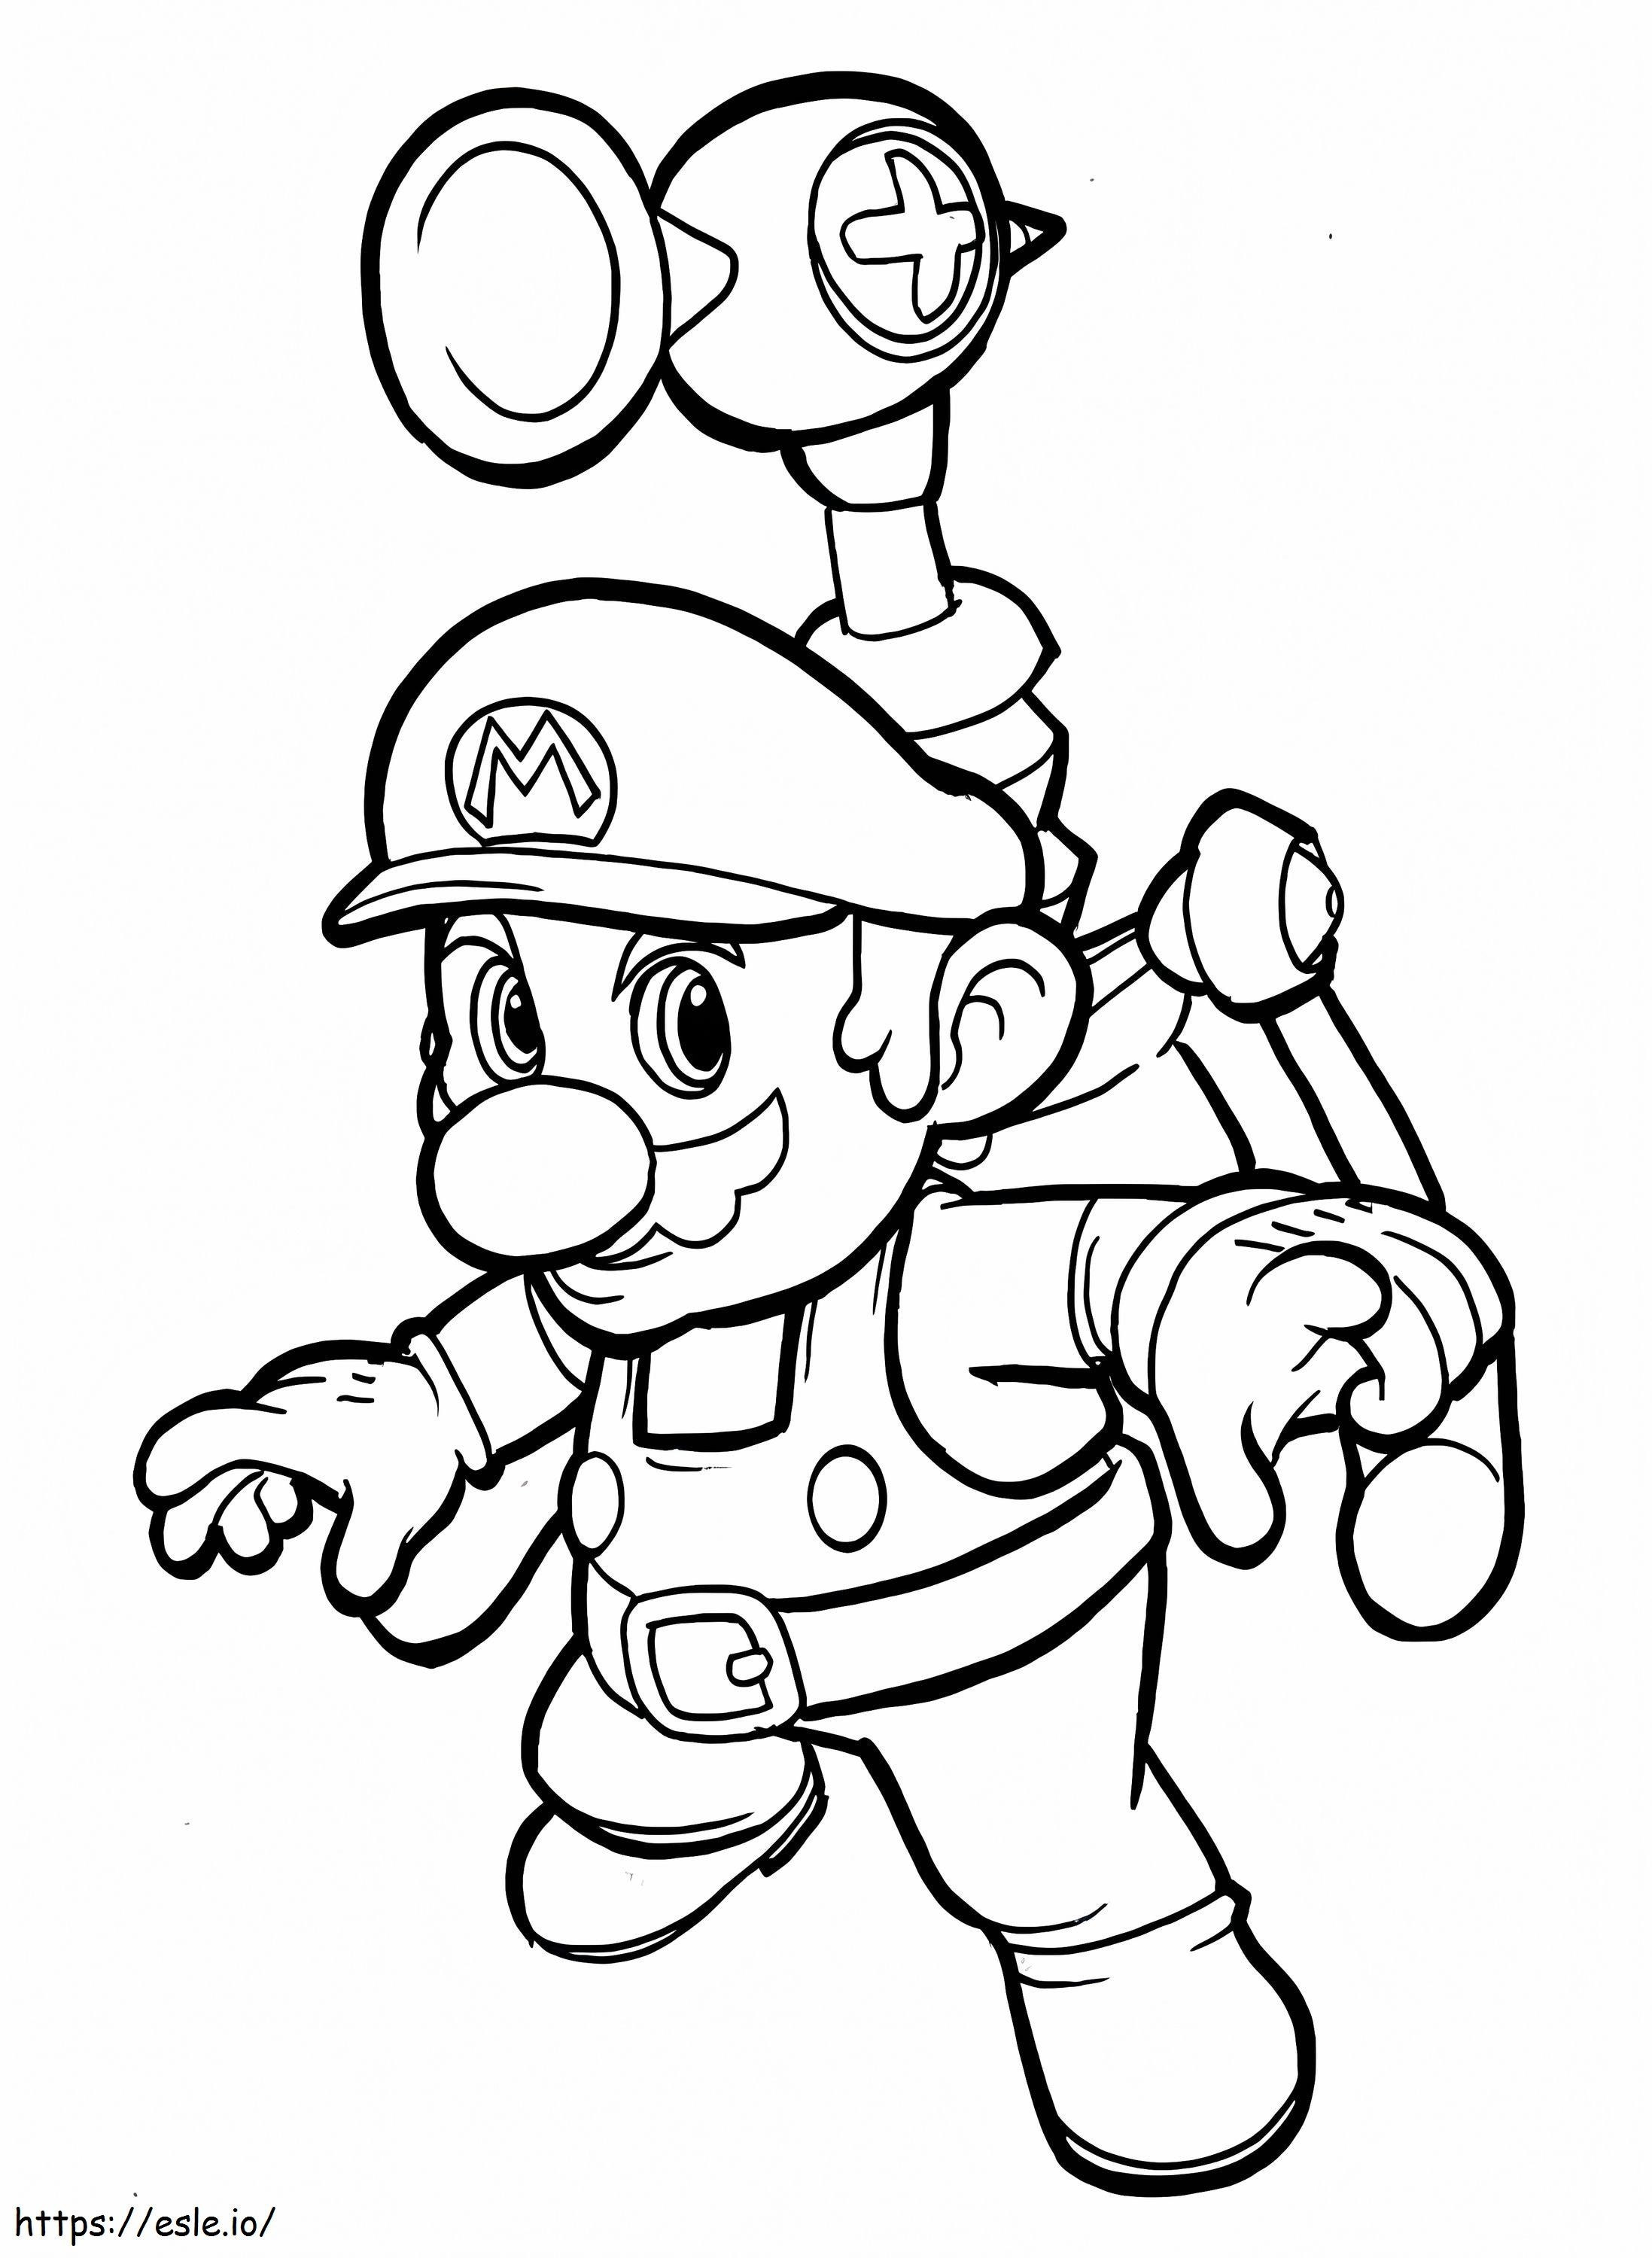 Super Mario 1 coloring page